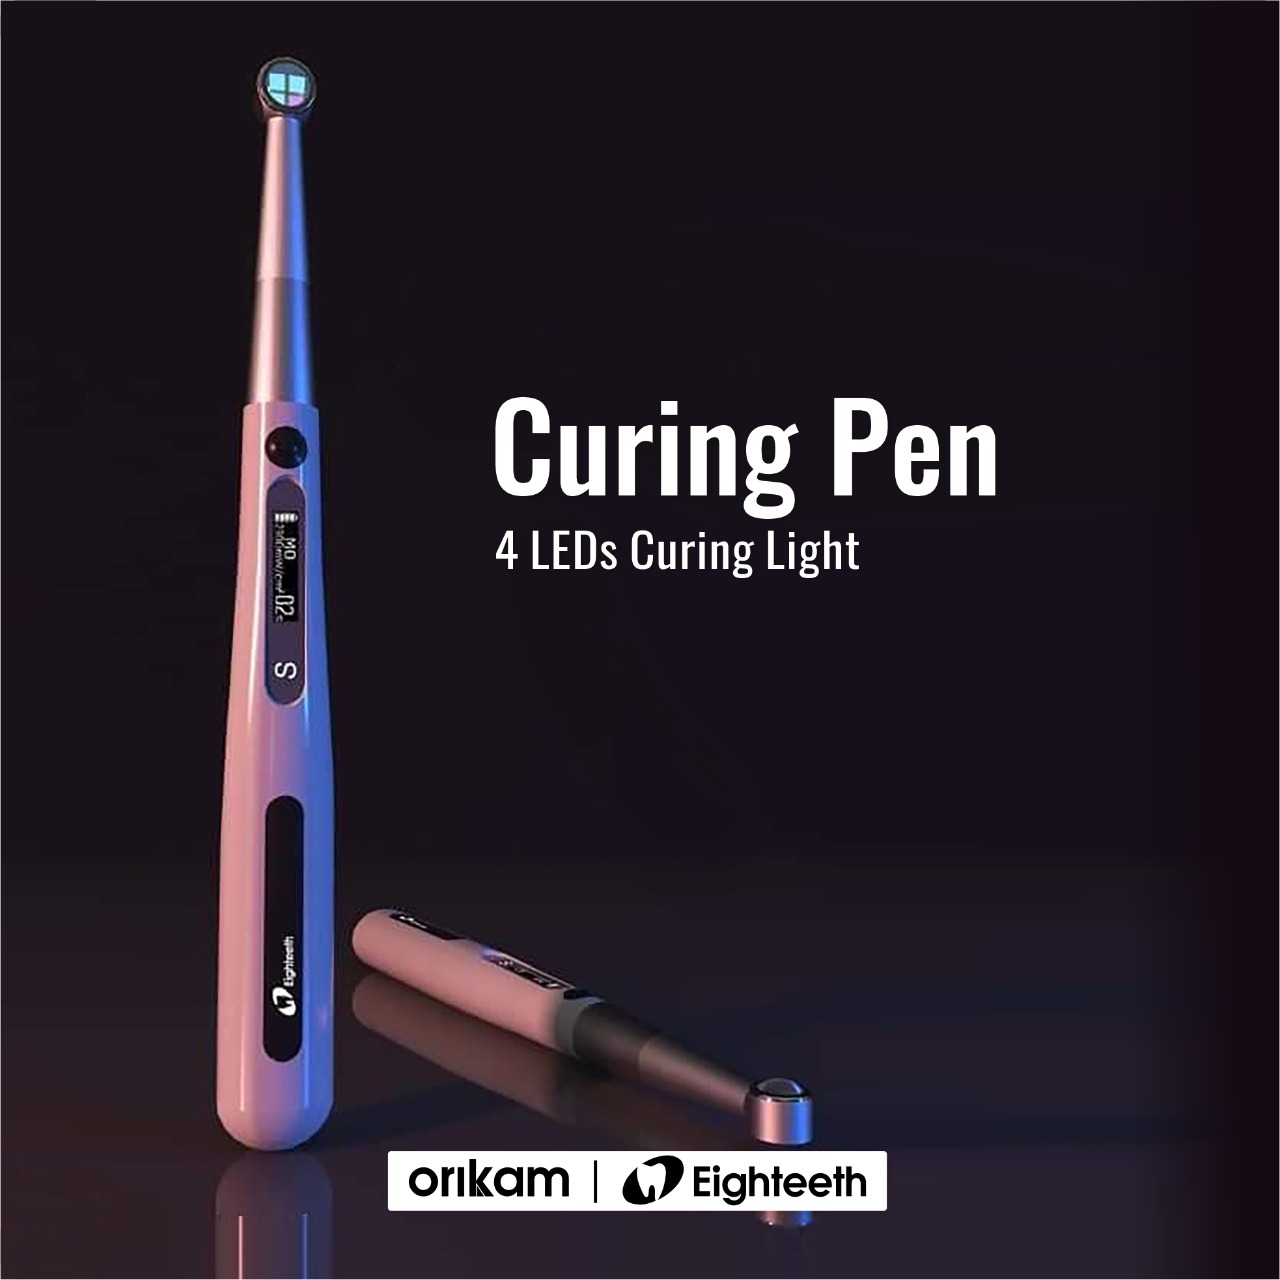 Orikam Eighteeth Curing Pen